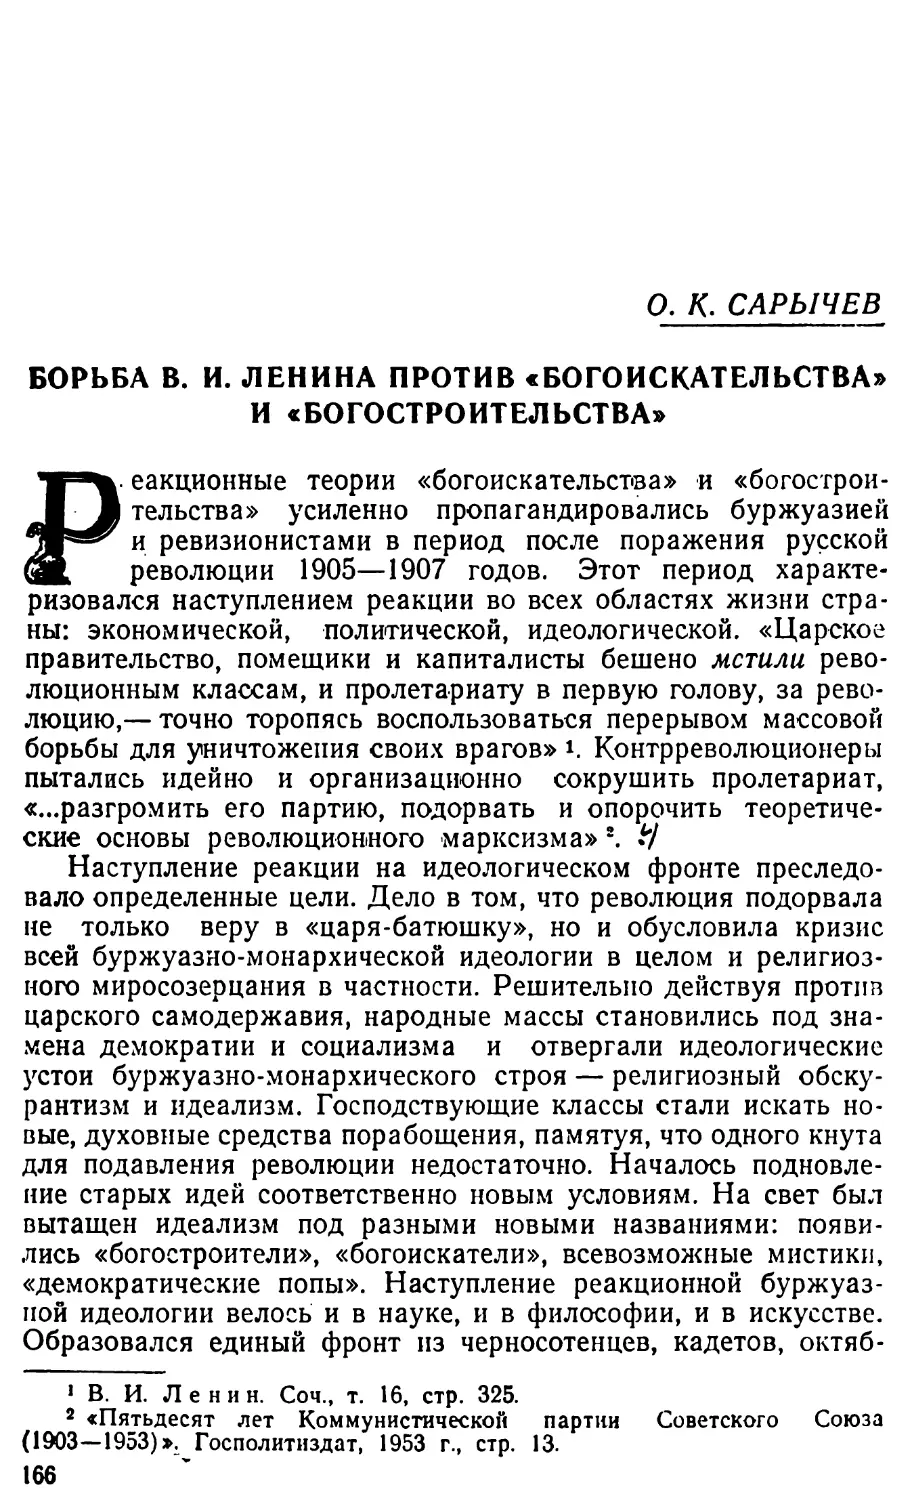 О.К. САРЫЧЕВ. Борьба В.И. Ленина против «богоискательства» и «богостроительства»